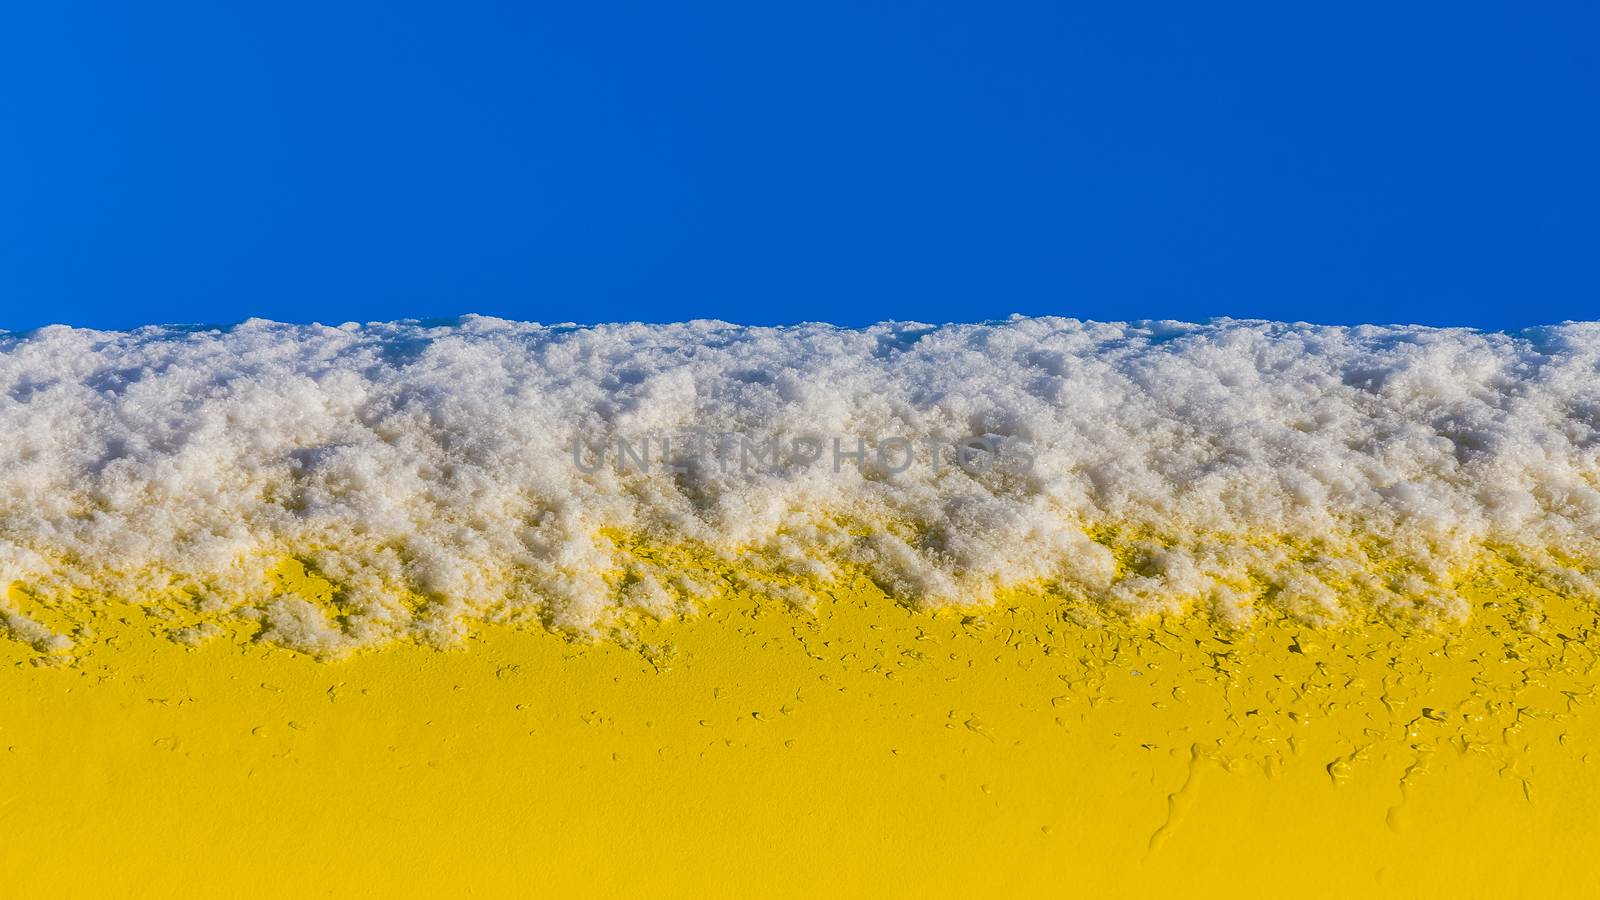 Snow on a yellow pipe by pawel_szczepanski